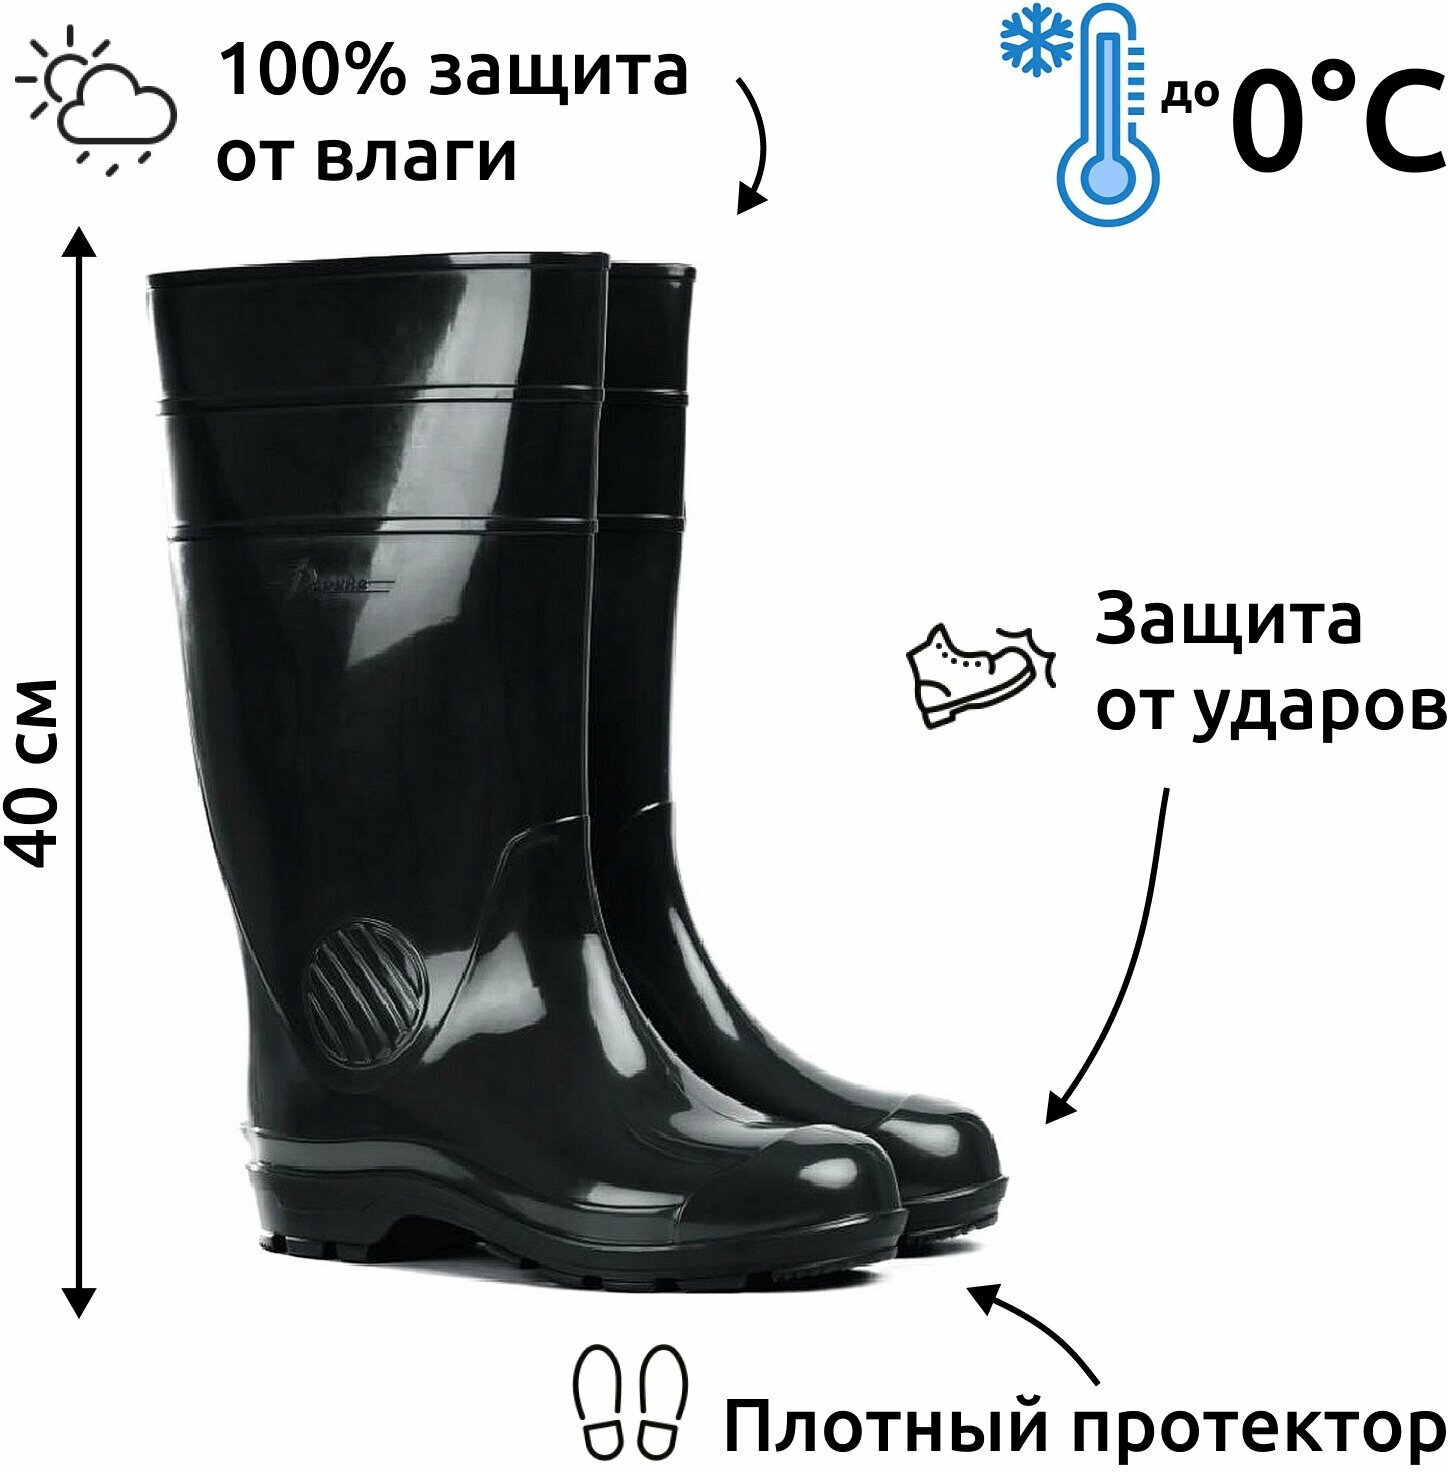 Сапоги резиновые мужские непромокаемые / Обувь для охоты и рыбалки / до -5С Дарина размер 45